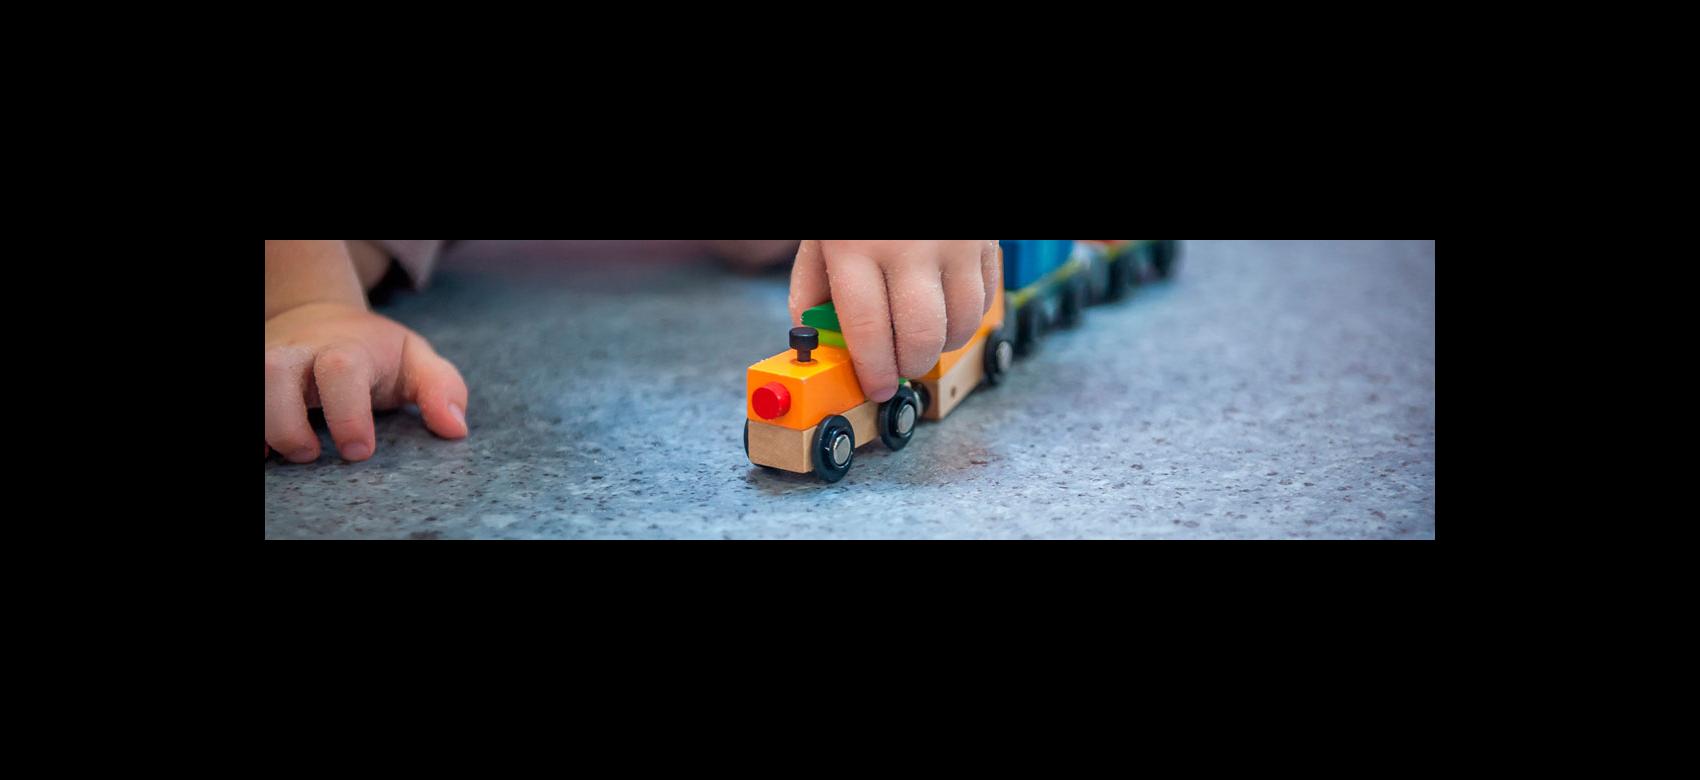 Detalle de la mano de un bebé que juega con un tren de madera